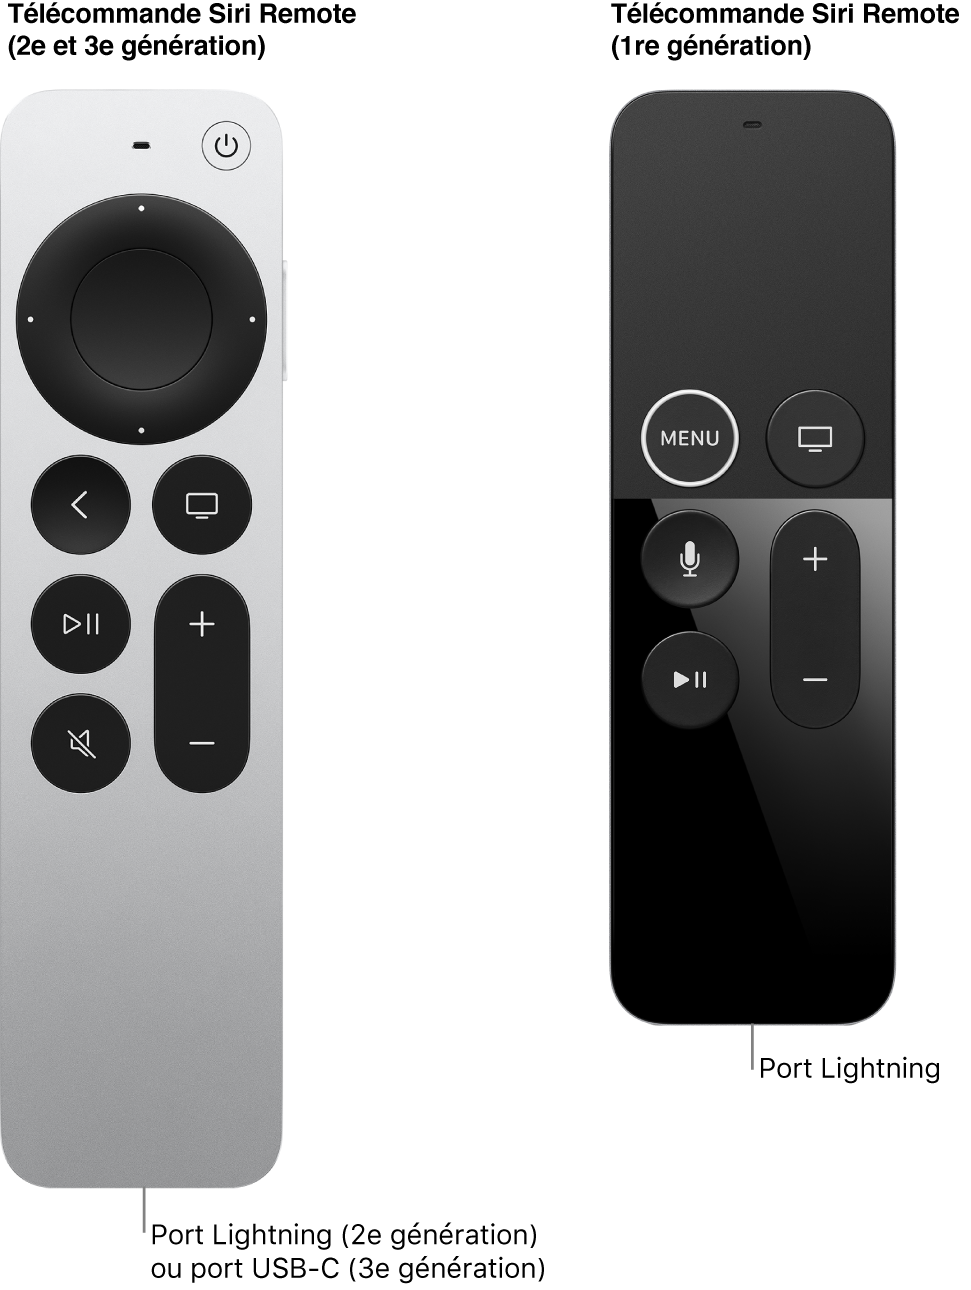 Image de la télécommande Siri Remote (2e et 3e générations) et de la télécommande Siri Remote (1re génération) montrant le port du connecteur